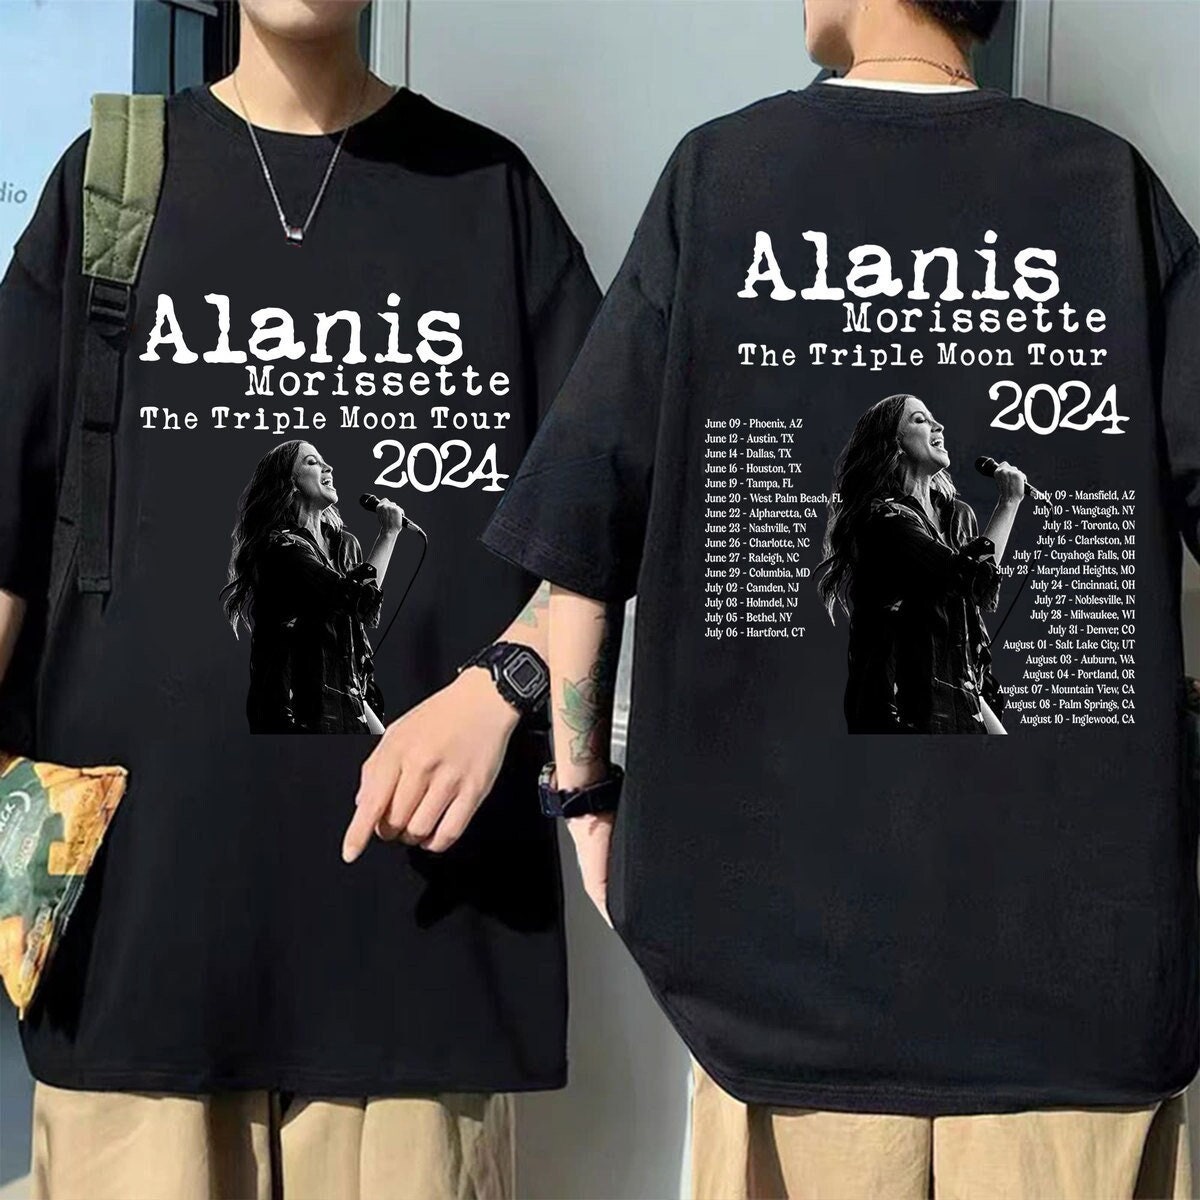 Alanis Morissette The Triple Moon Tour 2024 Shirt, Alanis Morissette 2024 Concert, The Triple Moon Tour Merch, Alanis Morissette Fan Gift